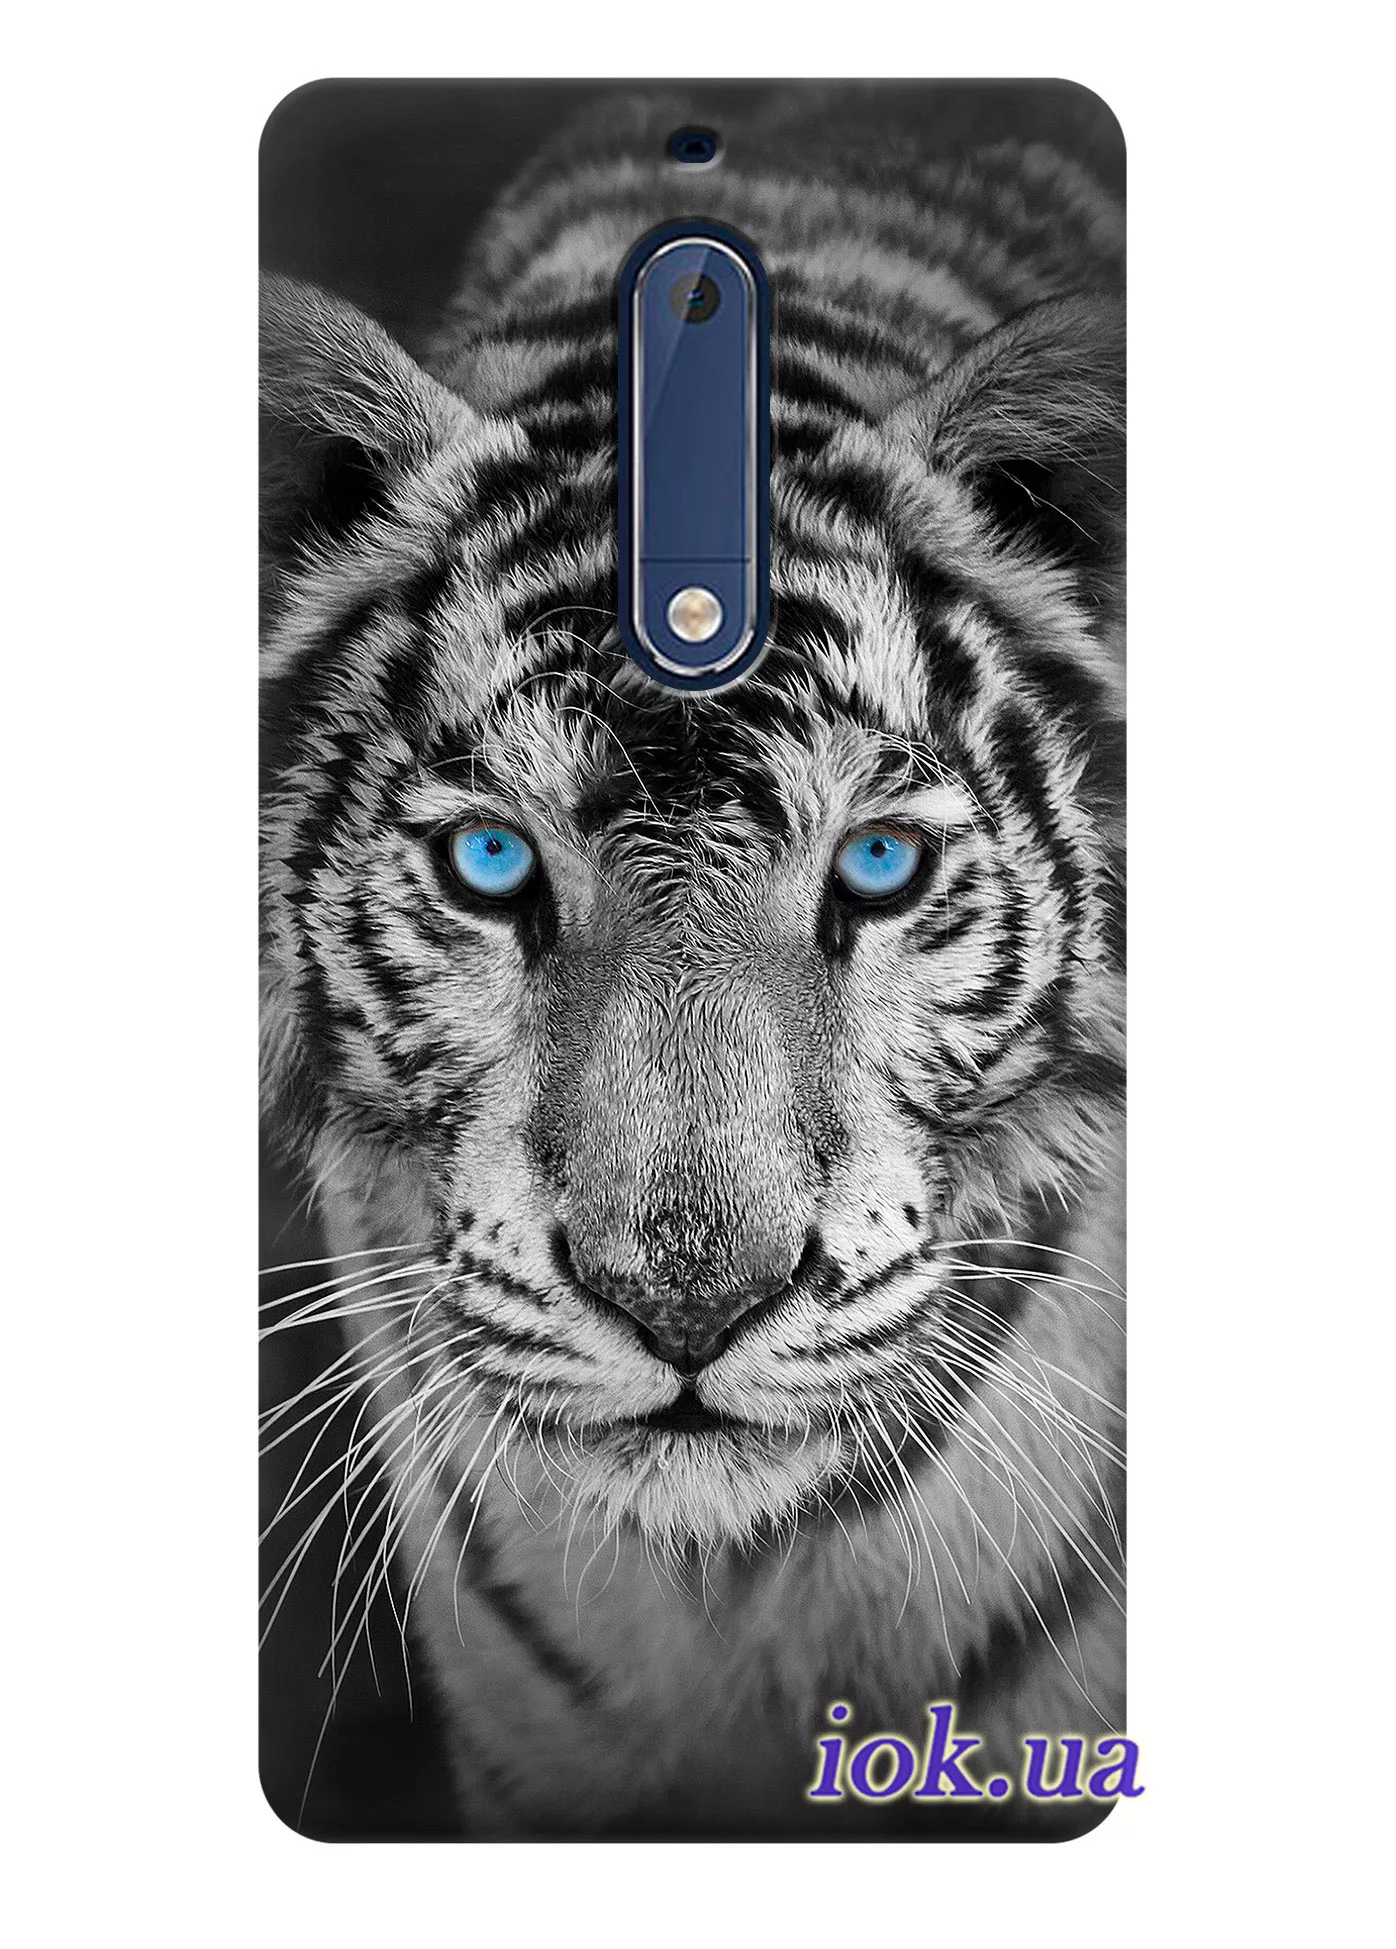 Чехол для Nokia 5 - Шикарный тигр